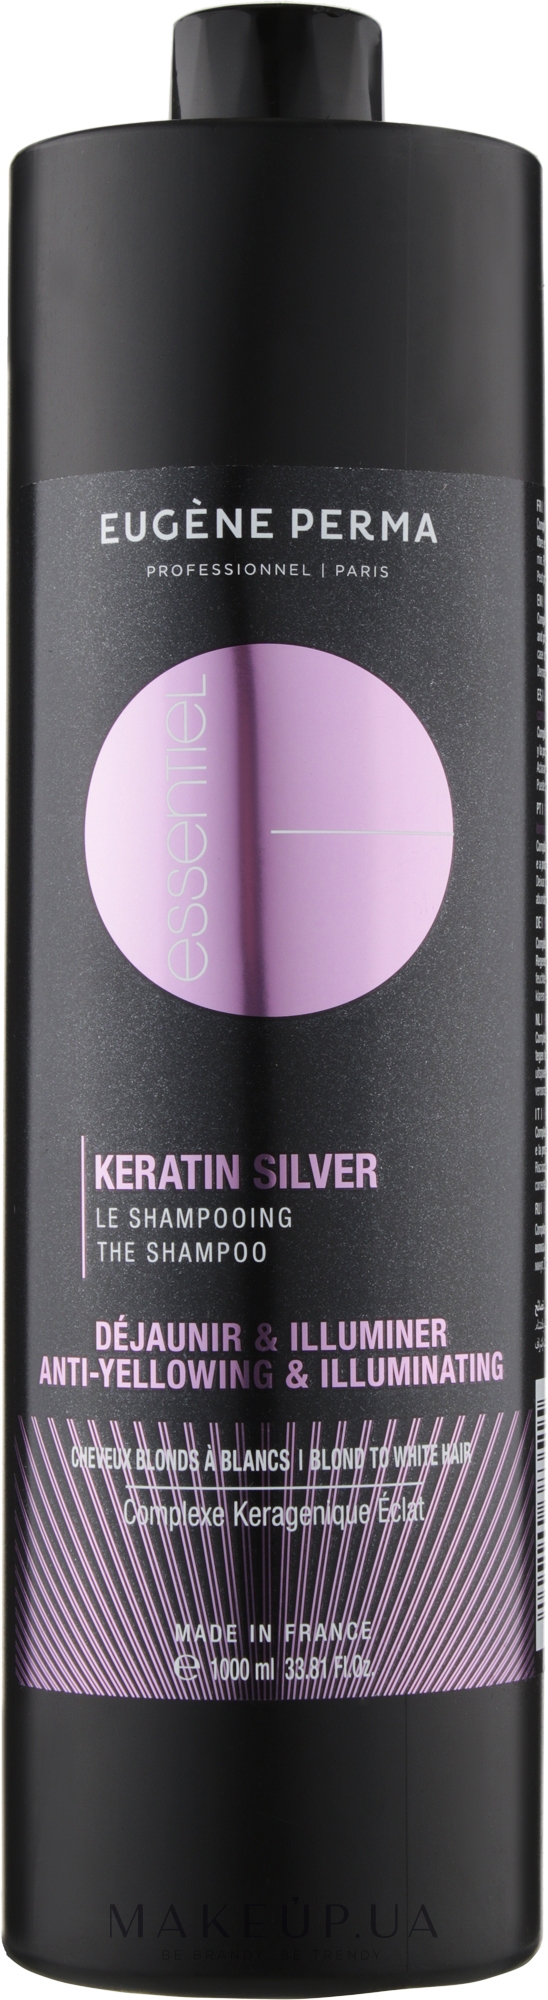 Шампунь с кератином для седых, осветленных и мелированных волос - Eugene Perma Essentiel Keratin Silver Shampoo — фото 1000ml